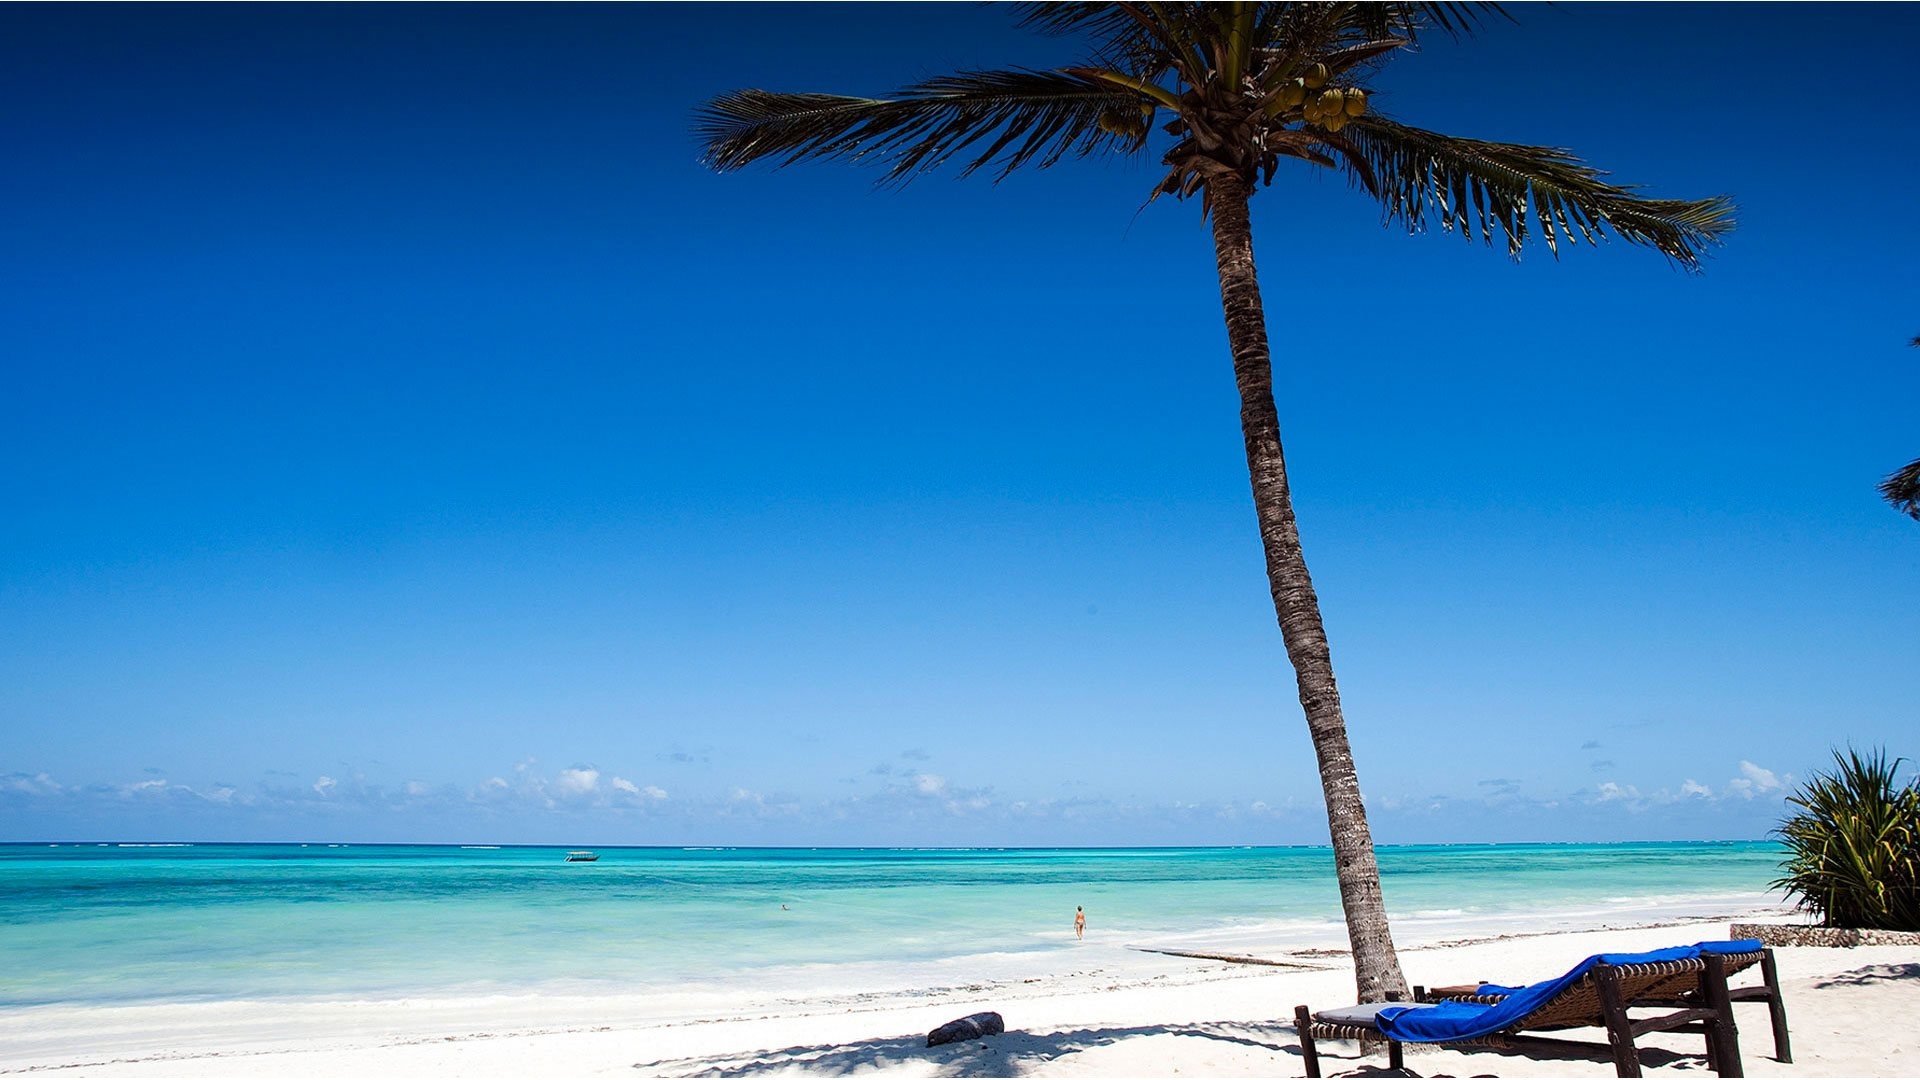 Karafuu Beach Resort, Zanzibar island, Idyllic retreat, Beachfront paradise, 1920x1080 Full HD Desktop